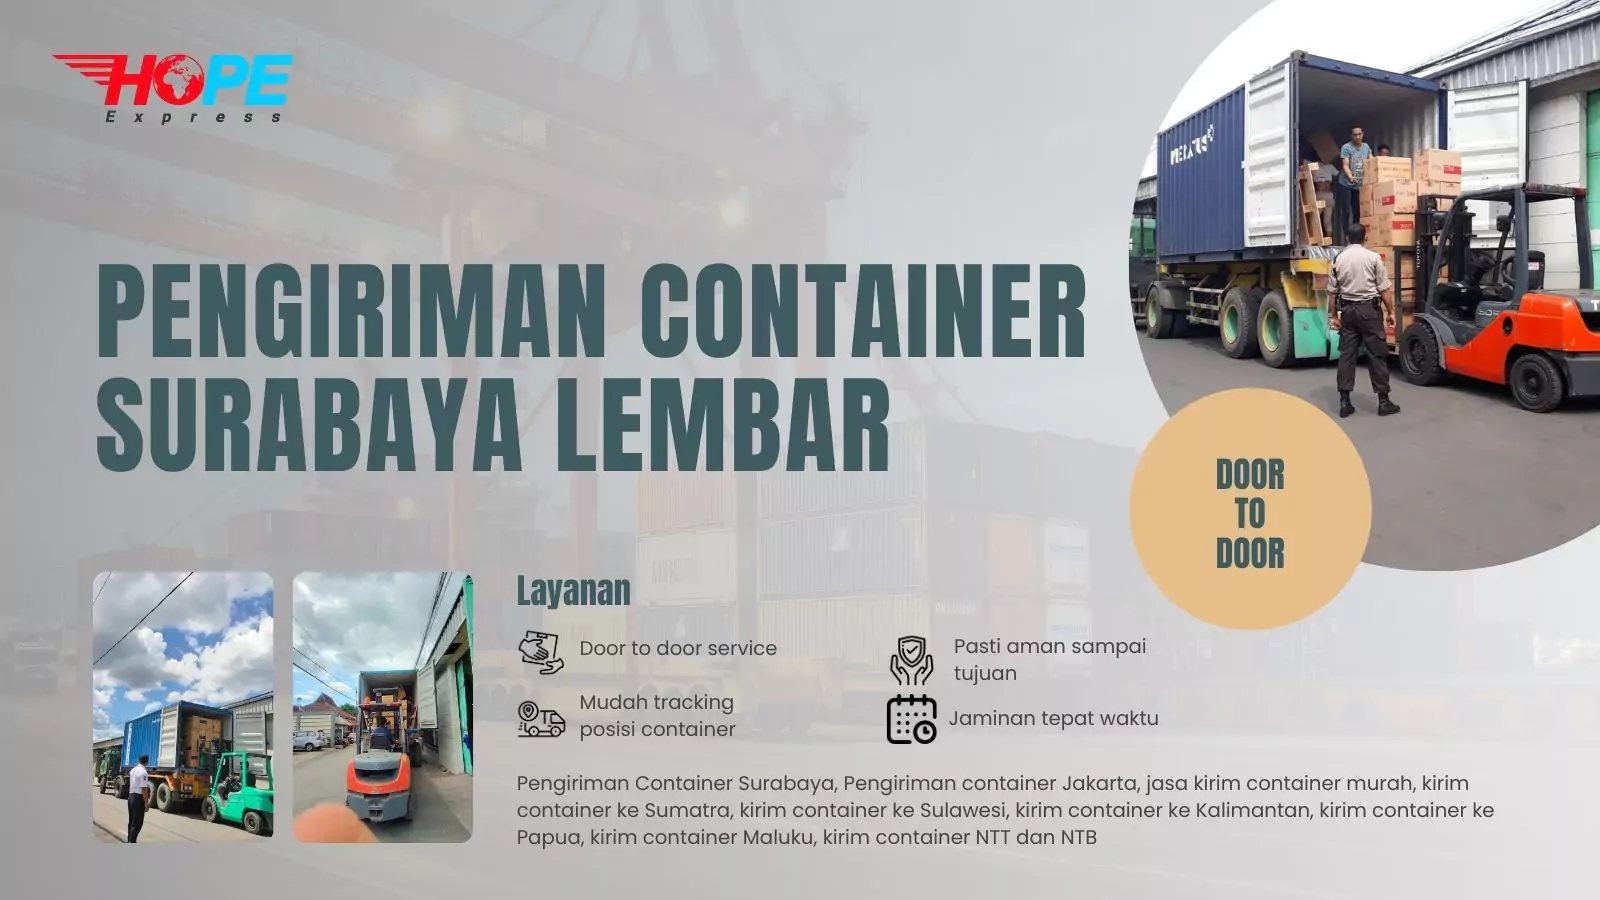 Pengiriman Container Surabaya Lembar